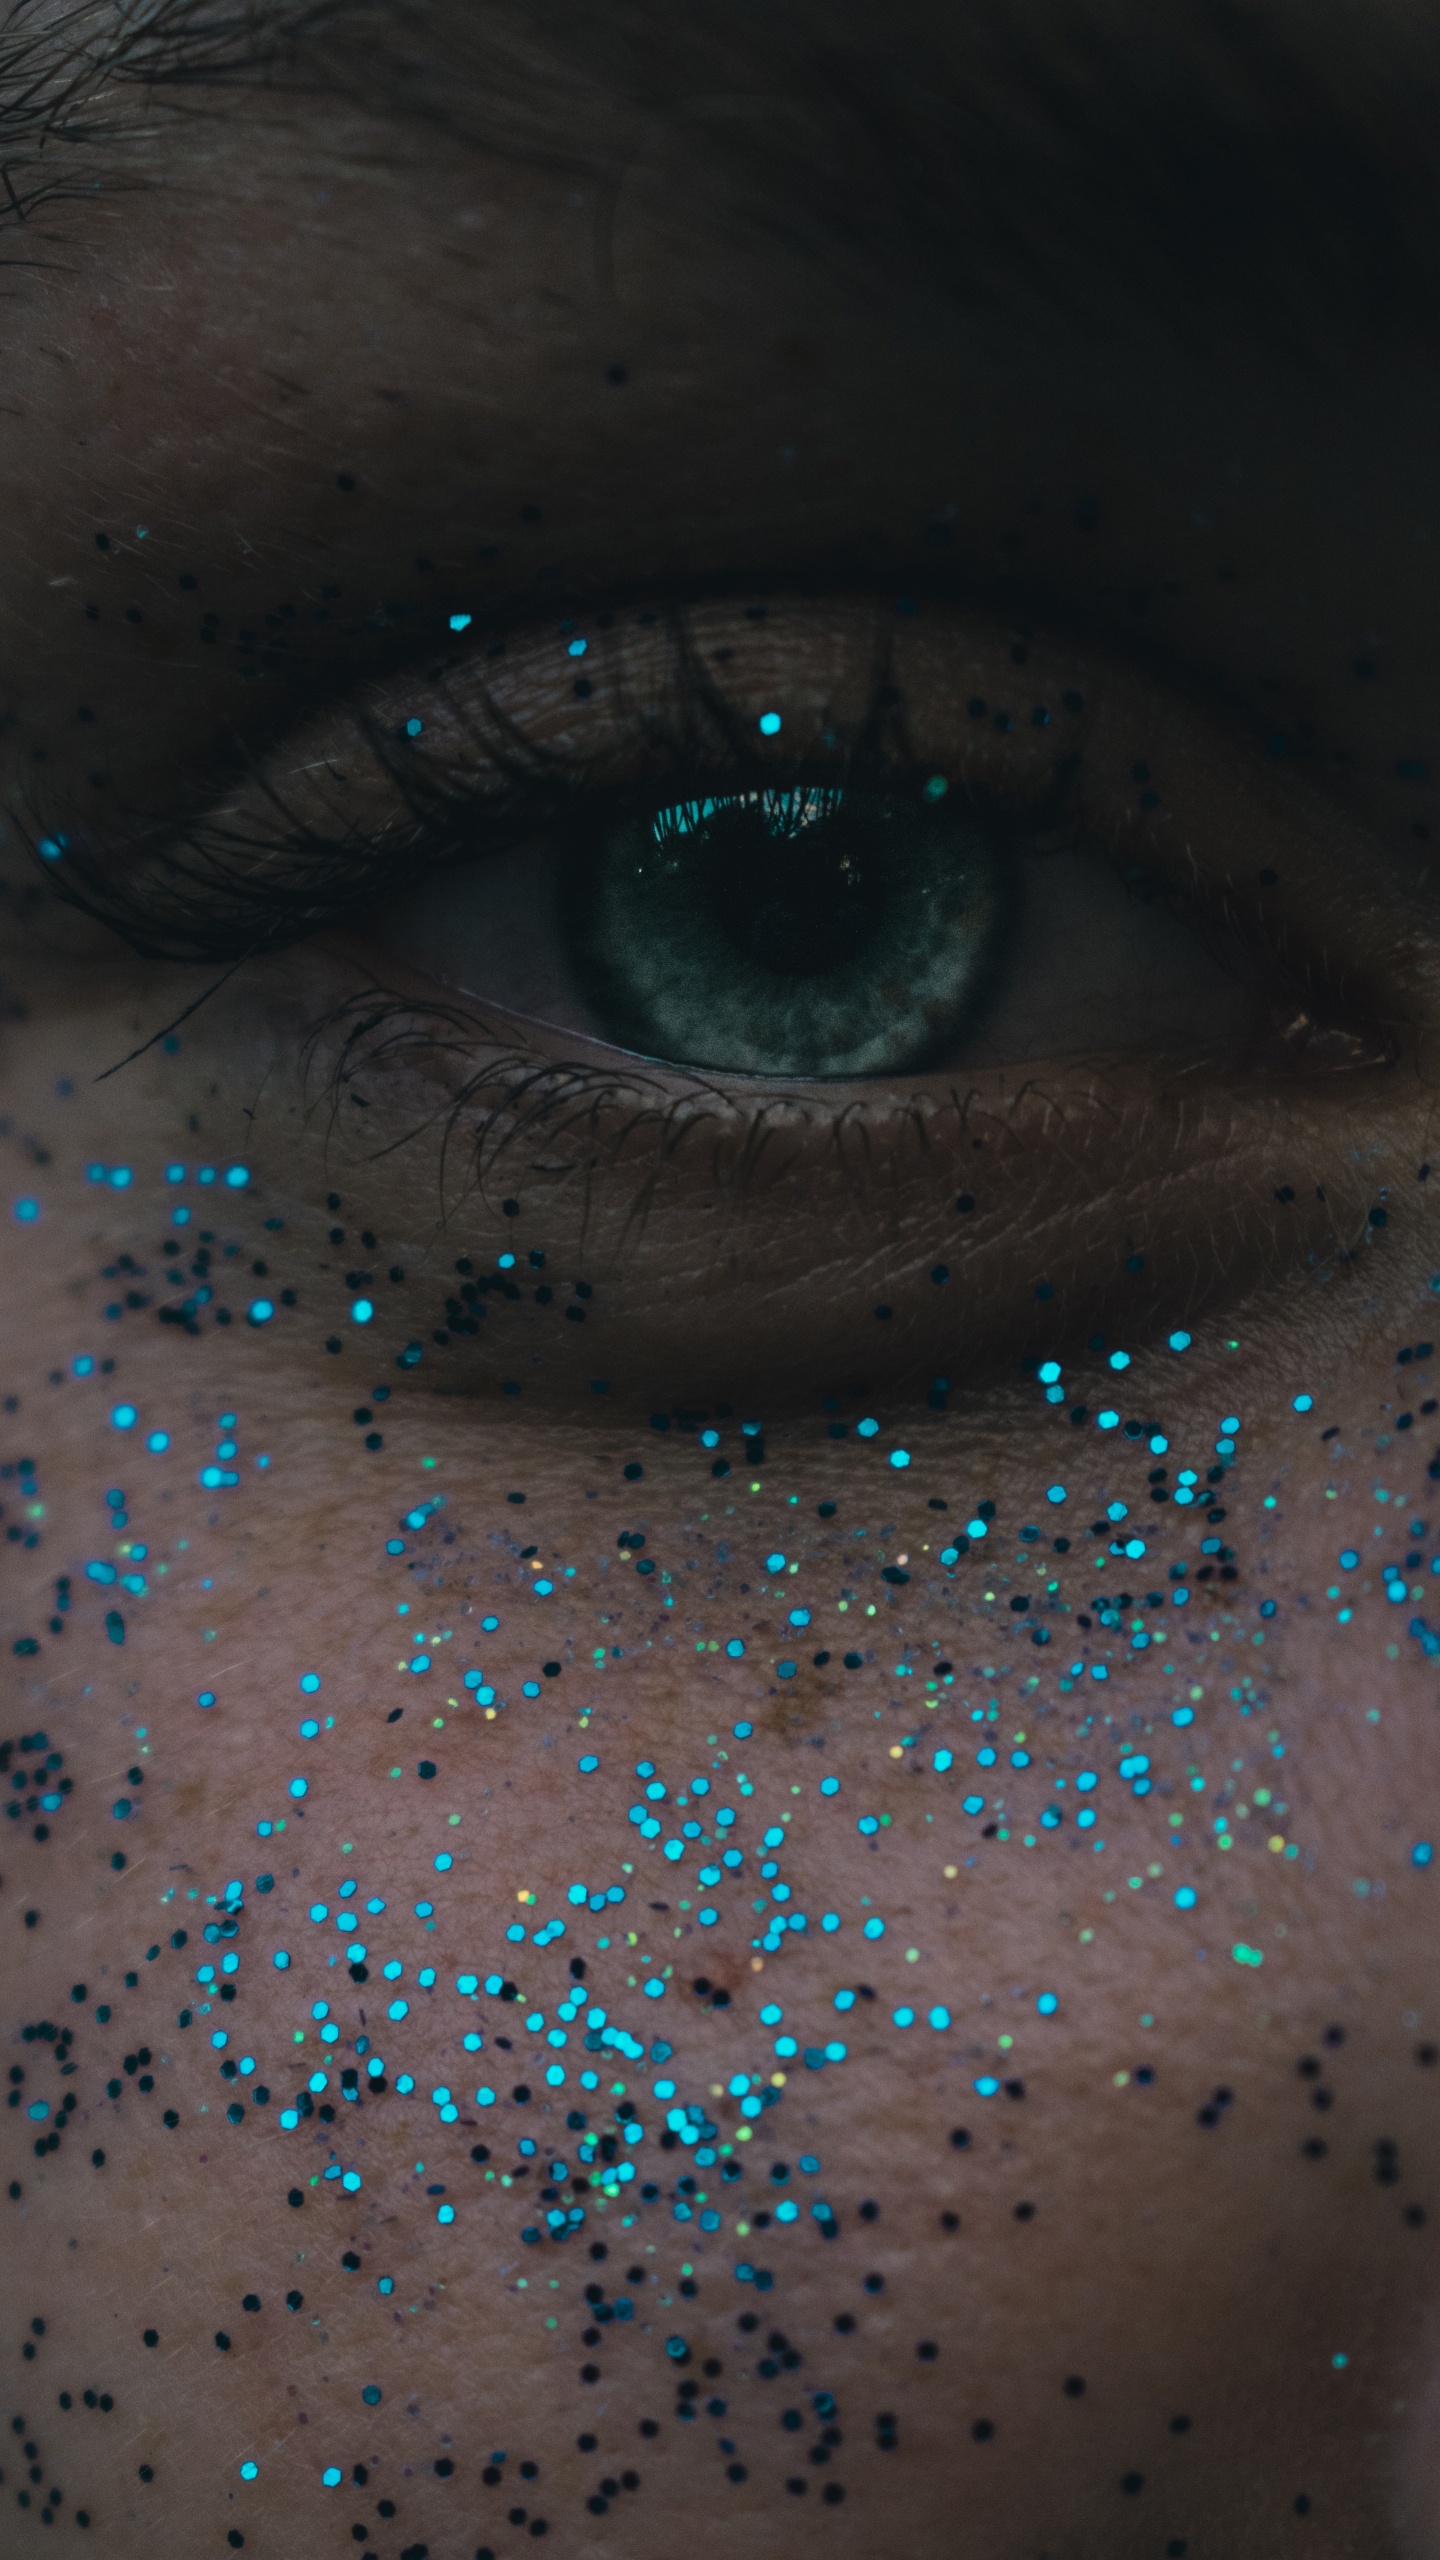 Personen Auge Mit Blauen Augen. Wallpaper in 1440x2560 Resolution